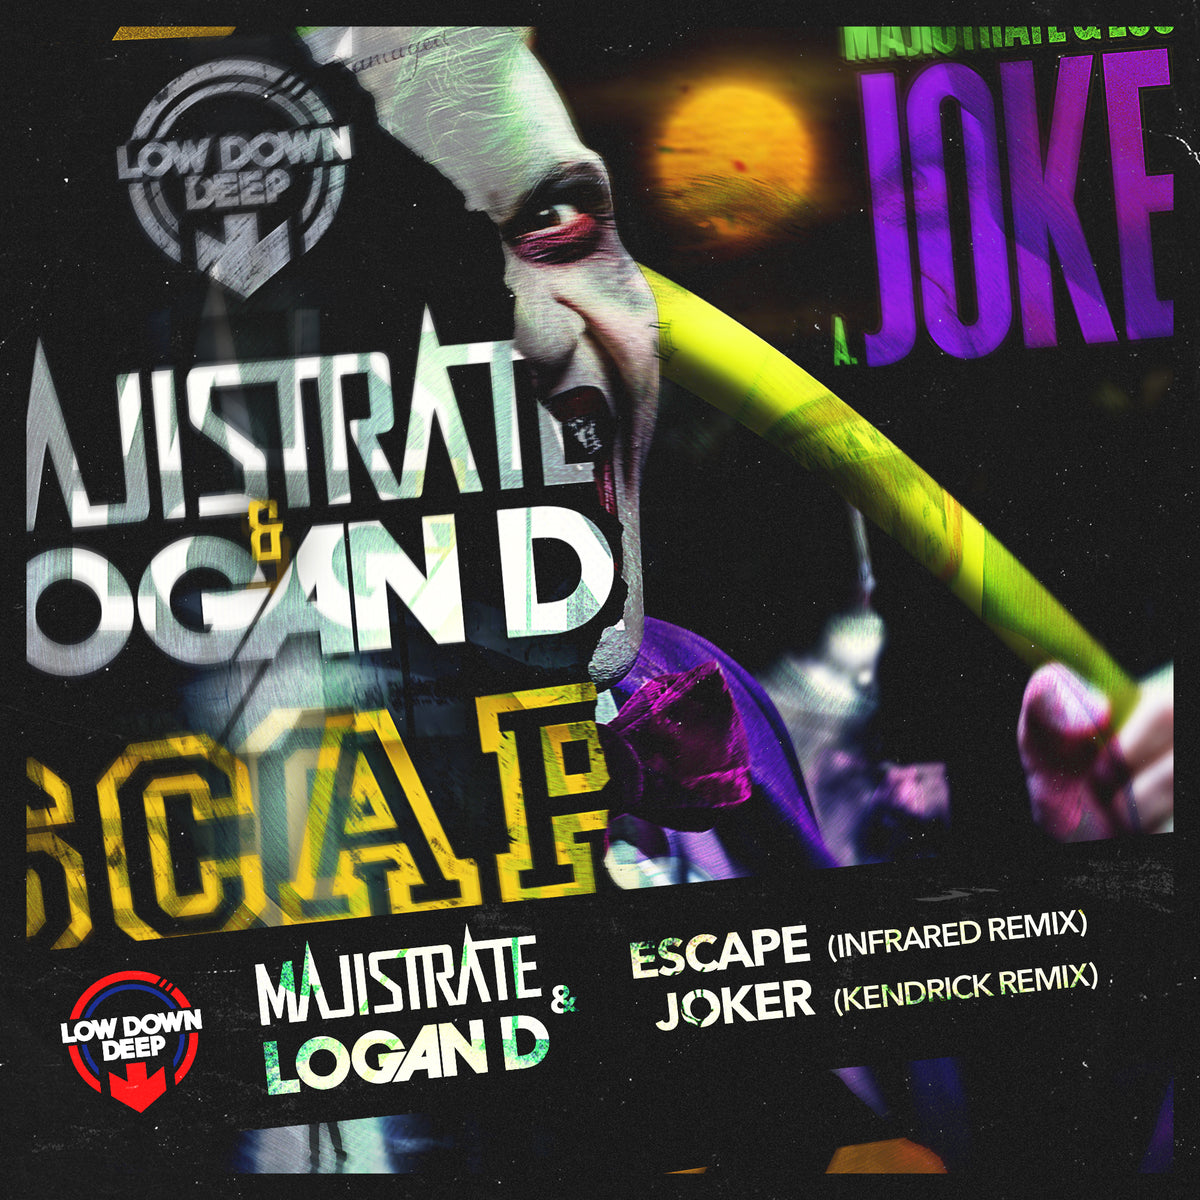 LDD 201 - Majistrate & Logan D 'Escape' (Infrared Remix) | 'Joker' (Kendrick remix)